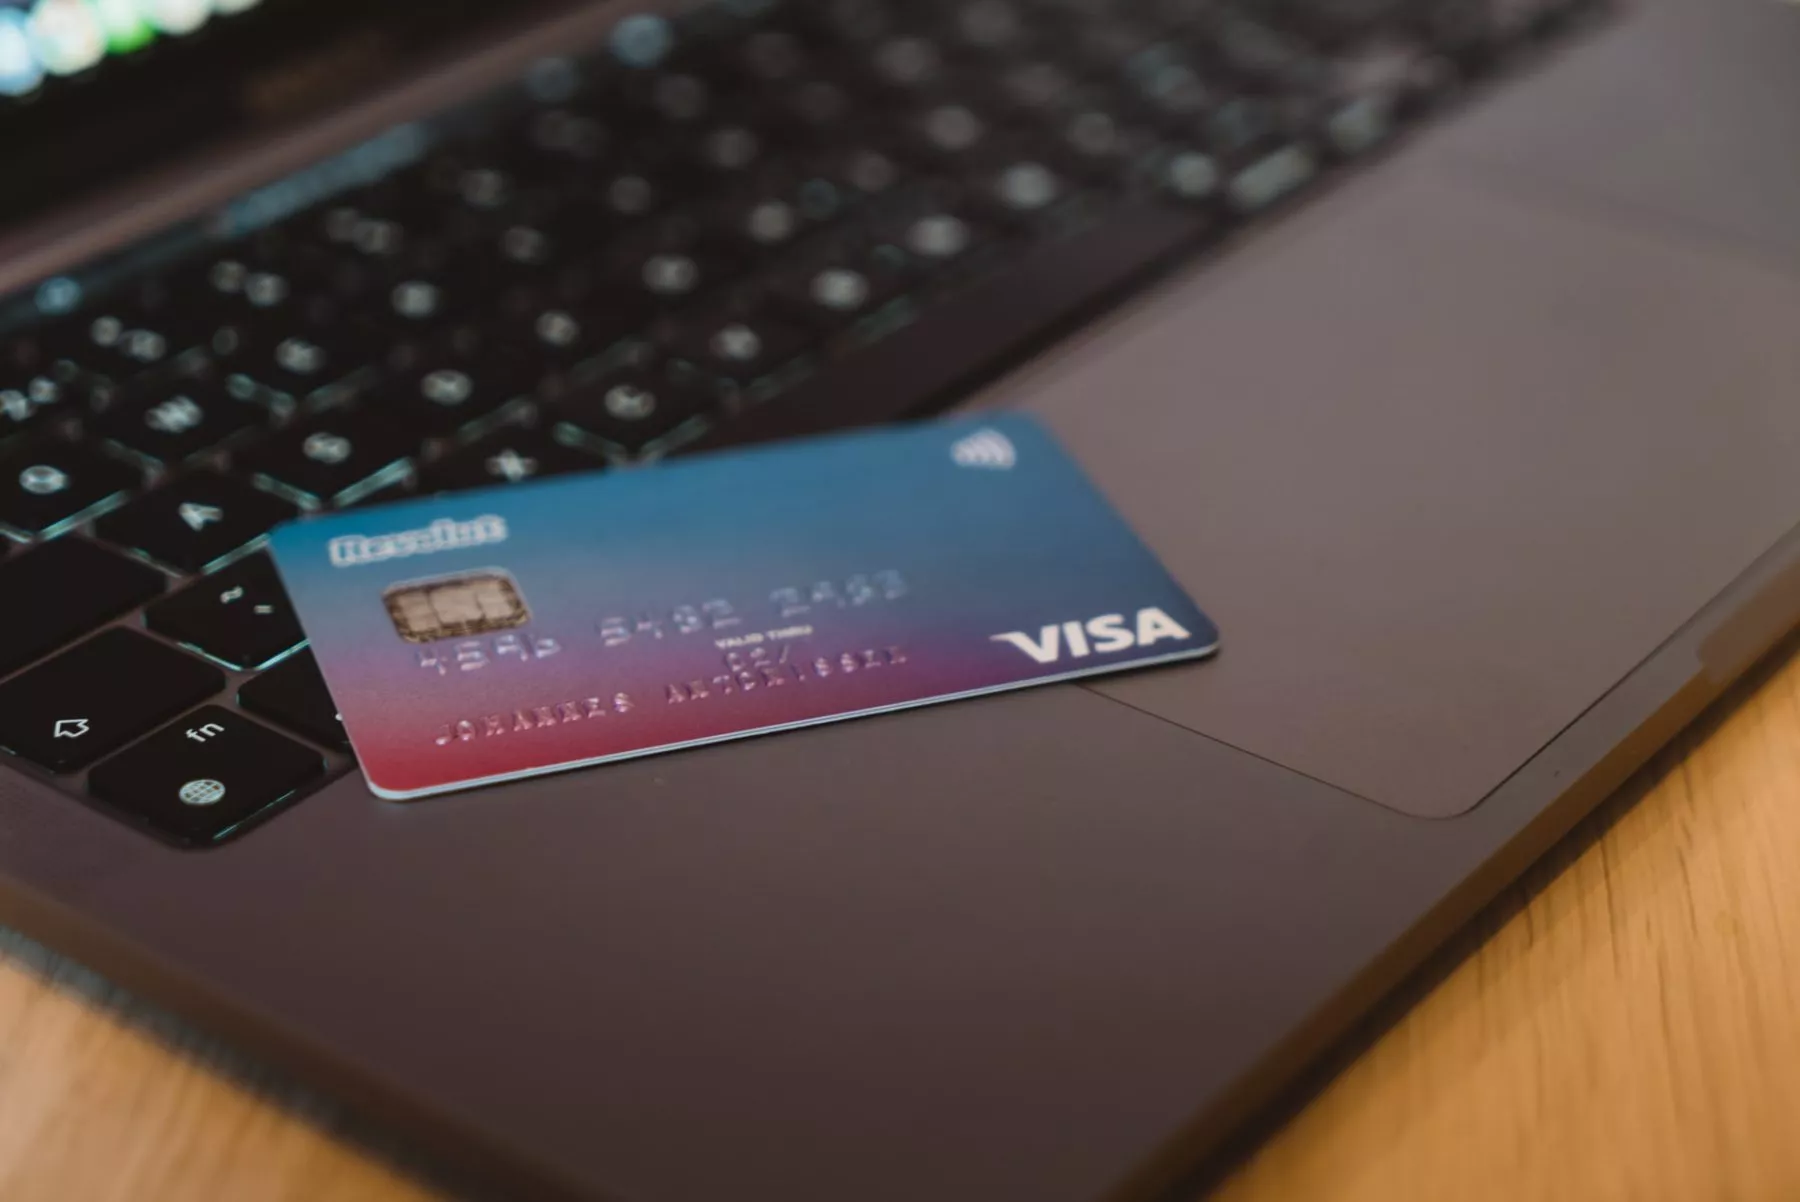 Visa van plan om grensoverschrijdende betalingen fintech ‘Currencycloud’ te kopen